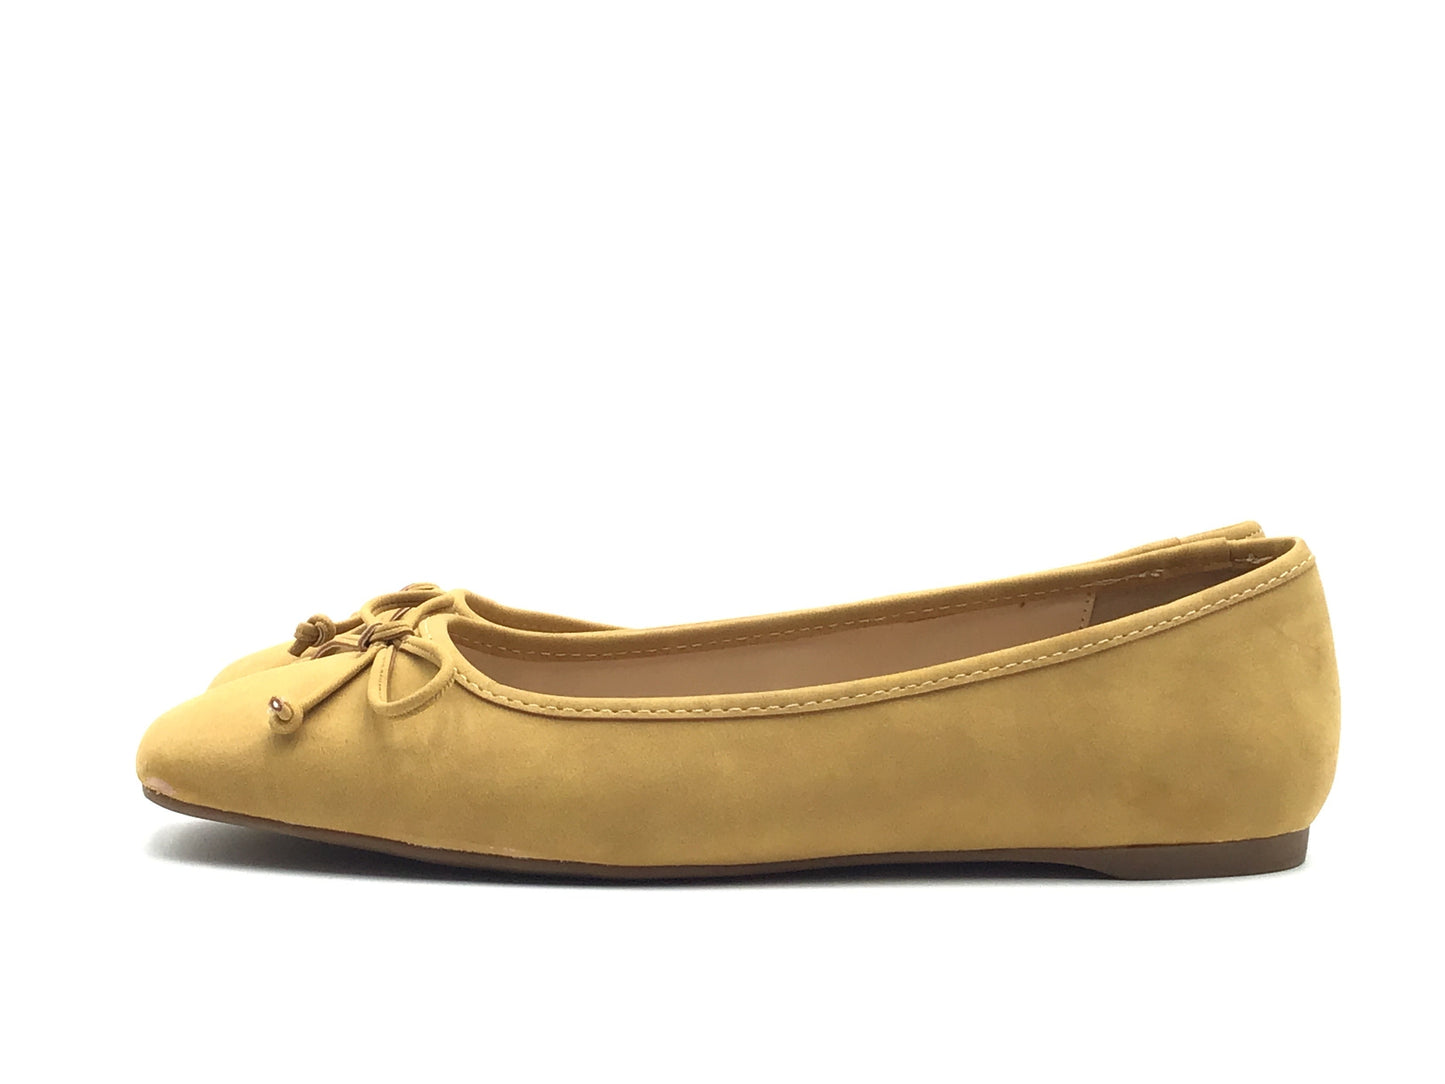 Shoes Flats By Liz Claiborne  Size: 9